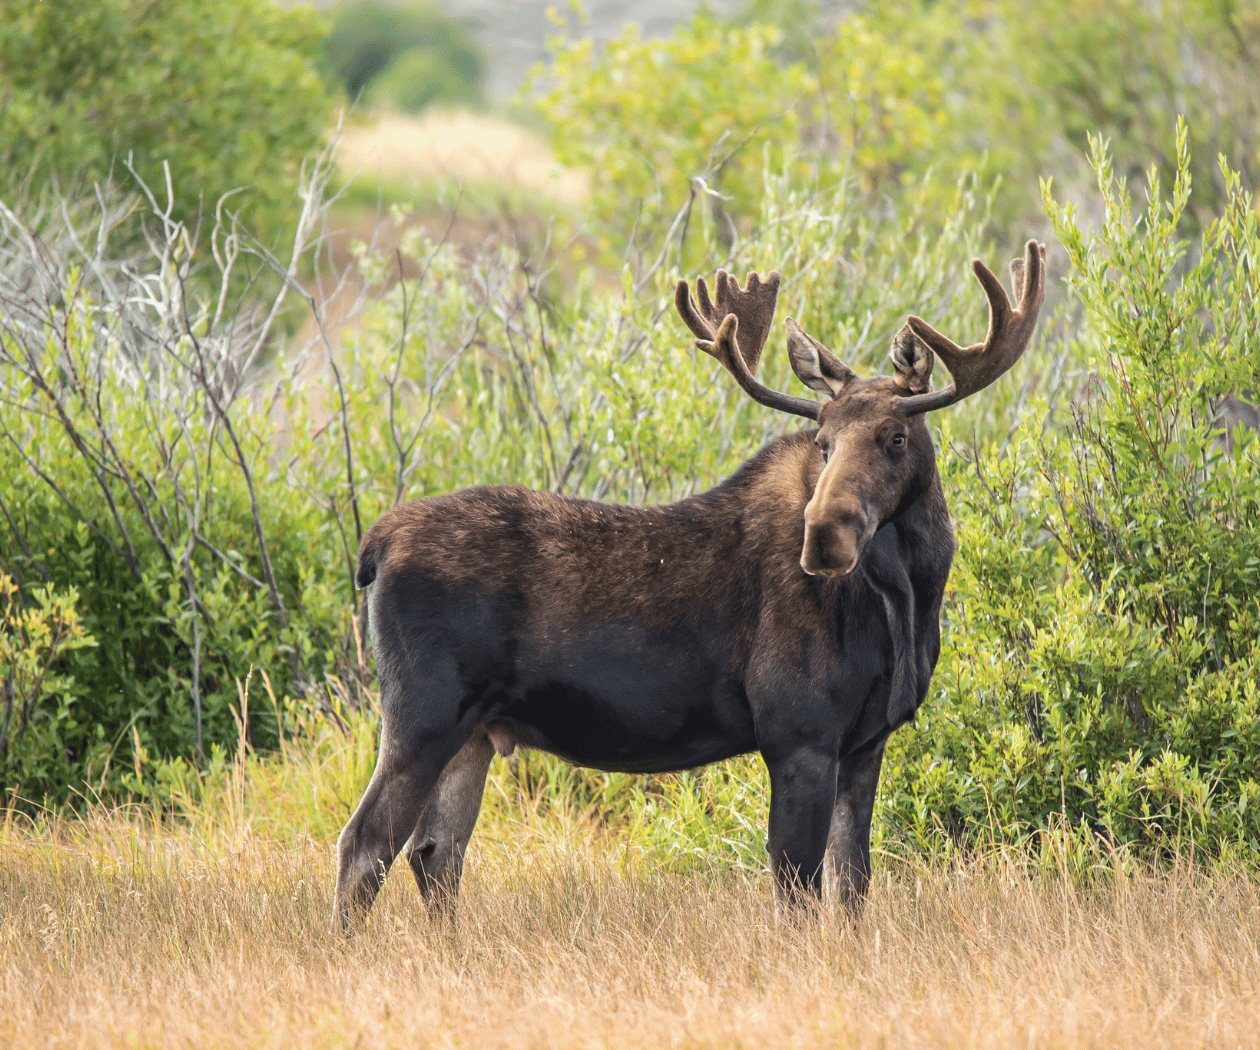 Bull Moose in nature